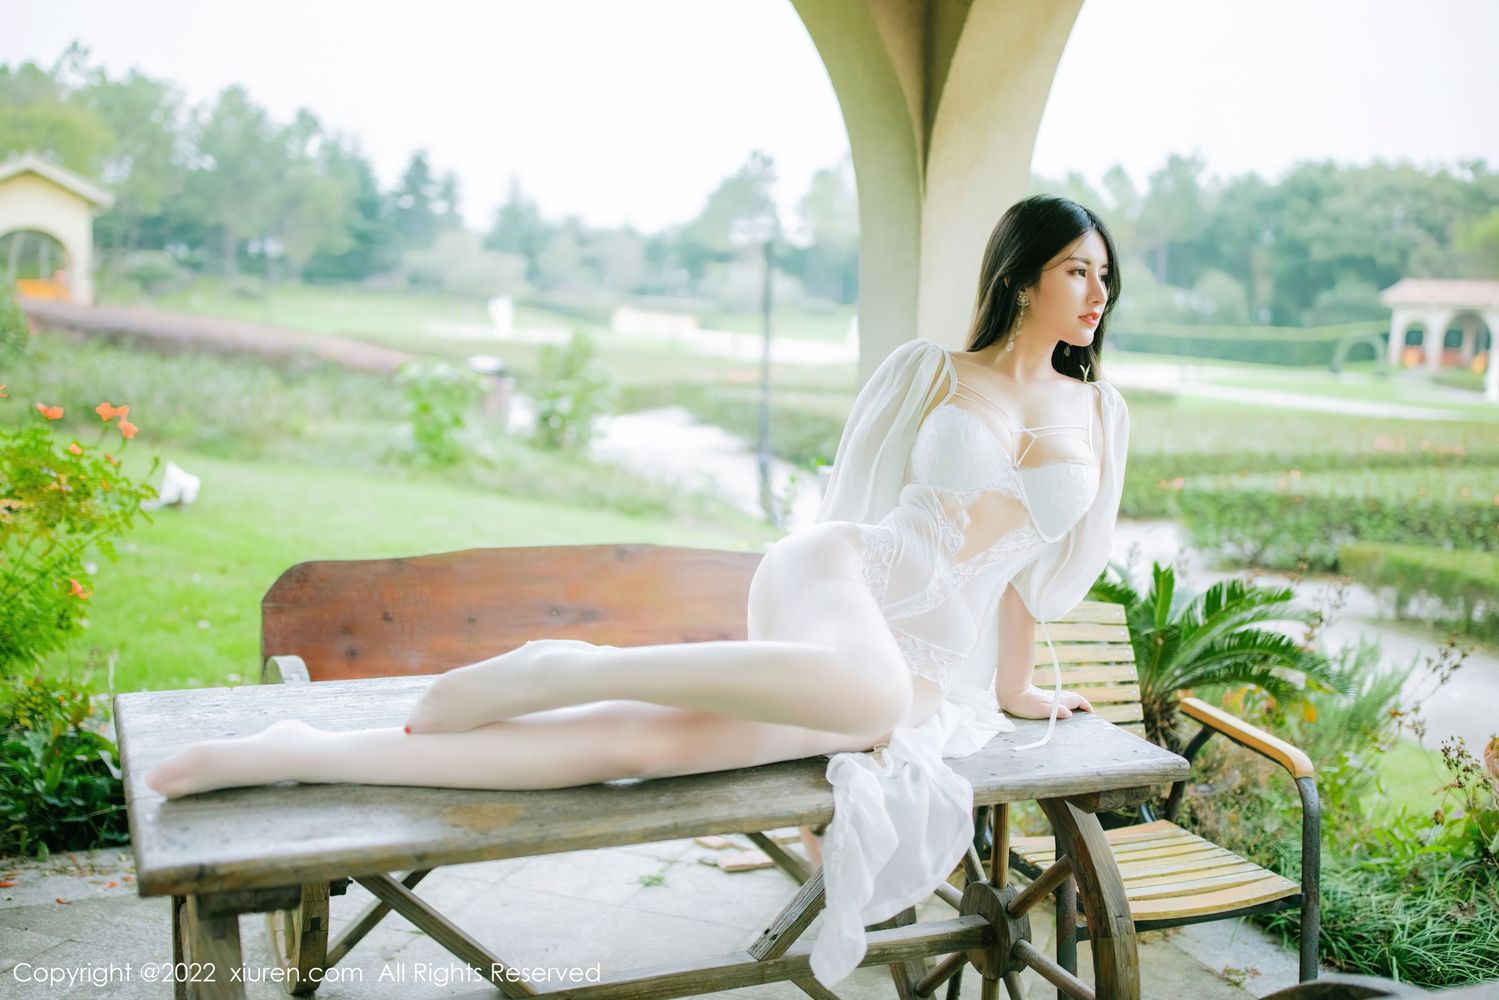 美女模特陈诗诗kiki白色轻透长衫搭配白色丝袜写真